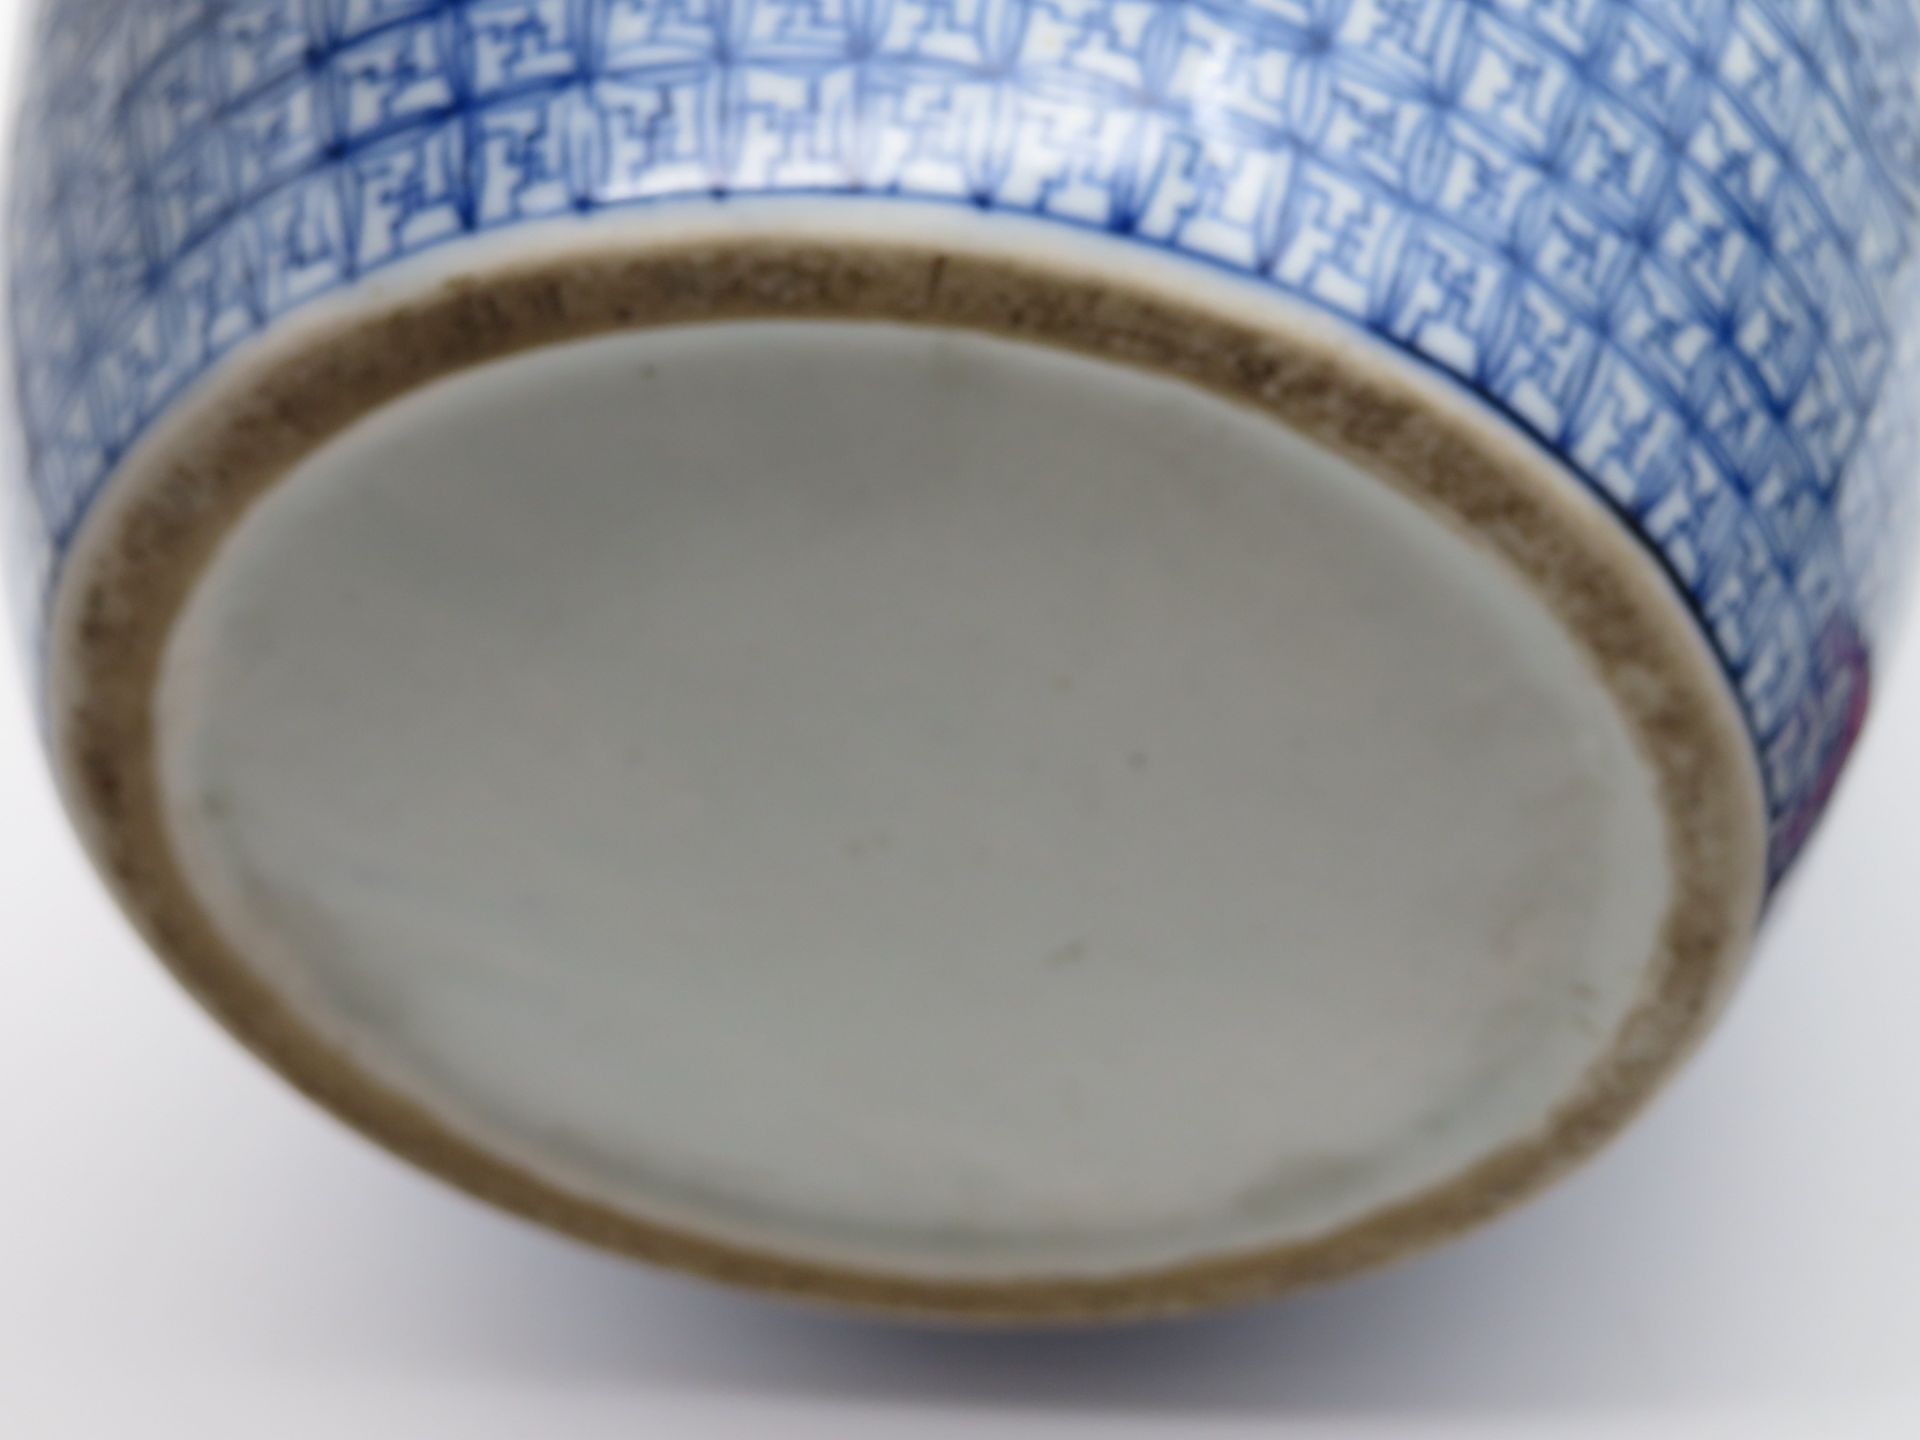 Deckelvase, China, Weißporzellan mit blauer Bemalung von Palastszenen, h 33 cm, d 22 cm. - Bild 2 aus 2